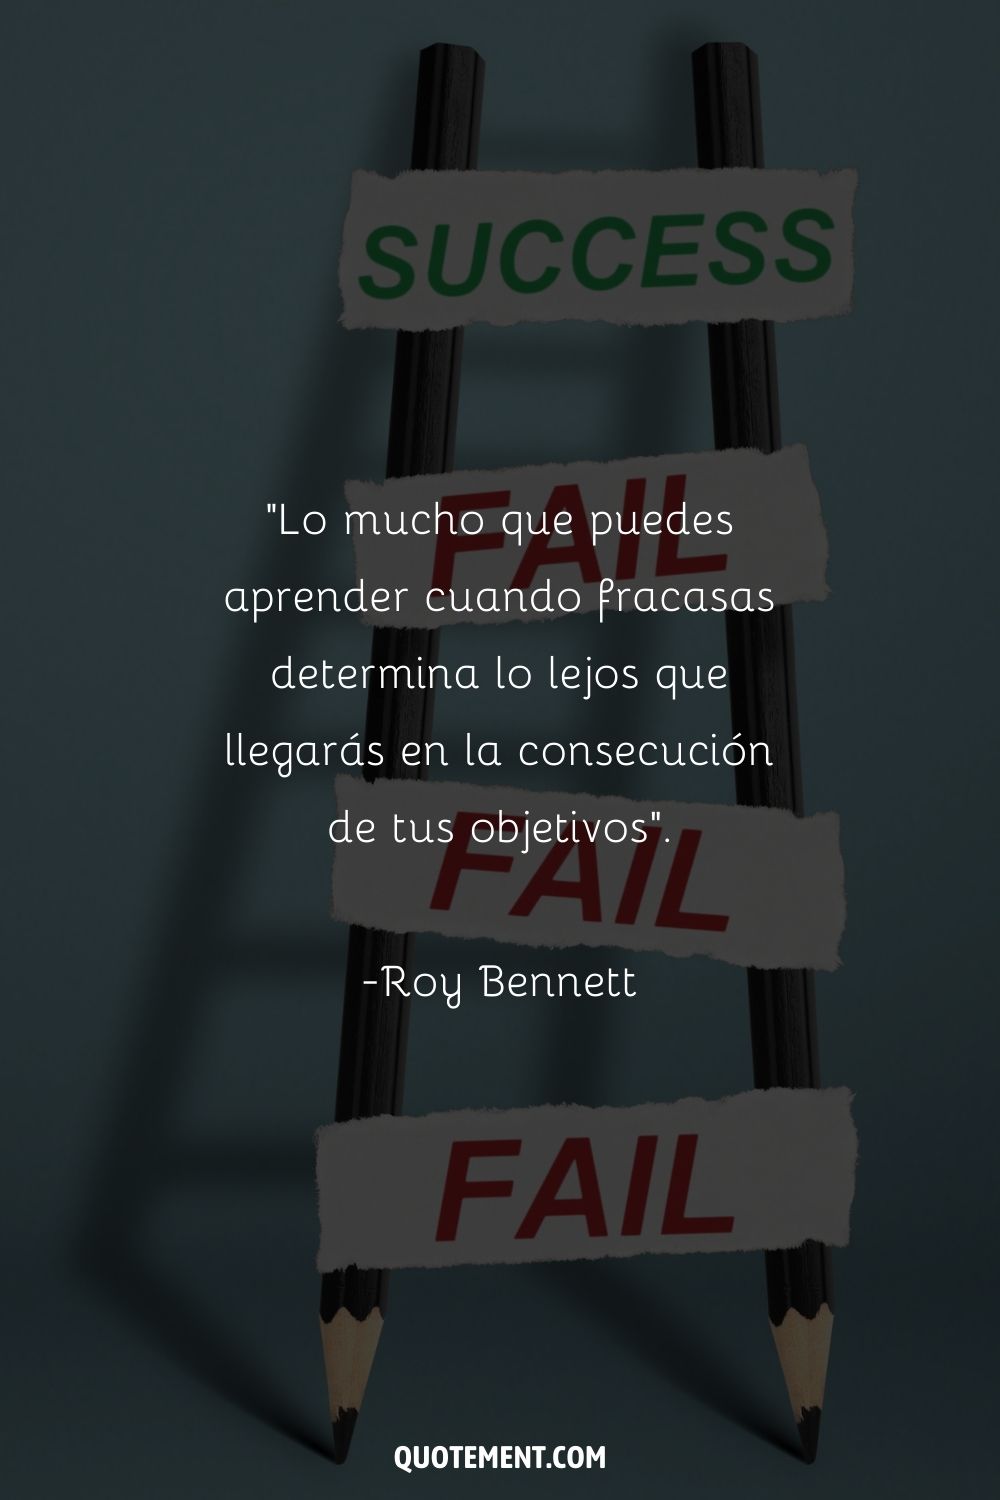 "Lo mucho que puedes aprender cuando fracasas determina lo lejos que llegarás en la consecución de tus objetivos". - Roy Bennett